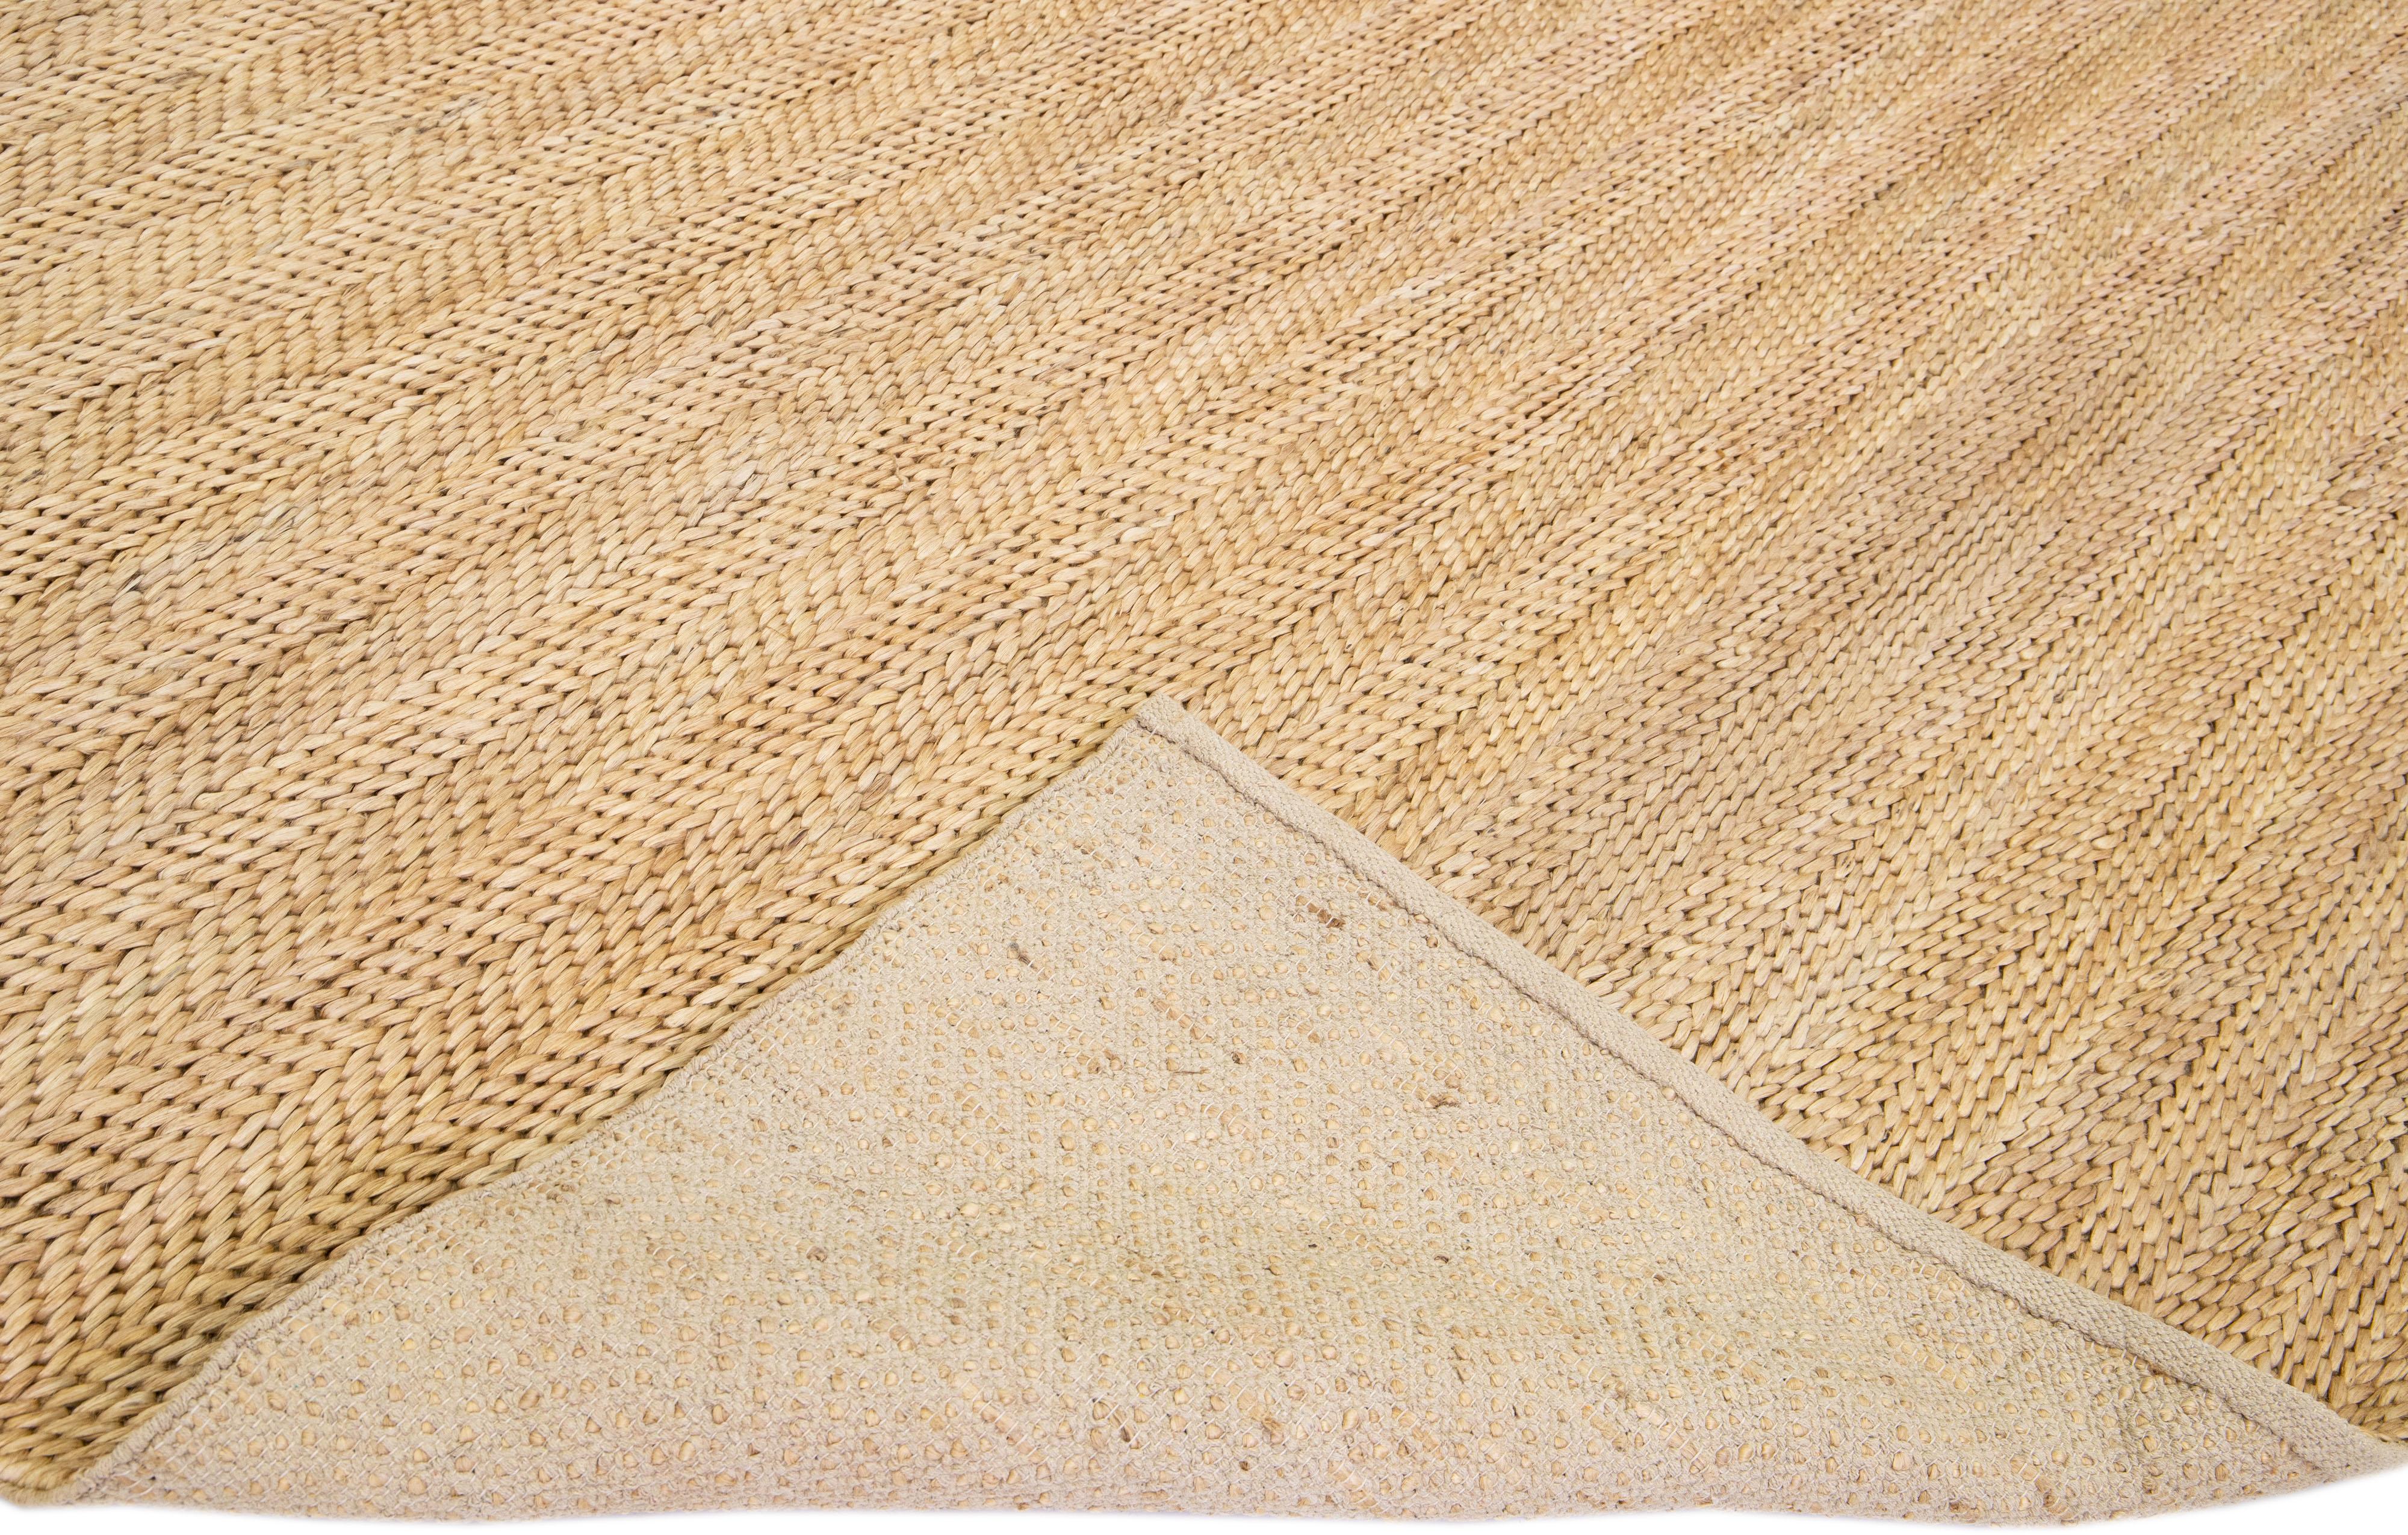 Magnifique tapis naturel tissé à la main en 70% jute et 30% coton avec le champ tressé beige-tan. Ce tapis moderne est parfait pour les styles de décoration farmhouse, côtière, rustique, bohème ou contemporaine. Il présente une conception solide